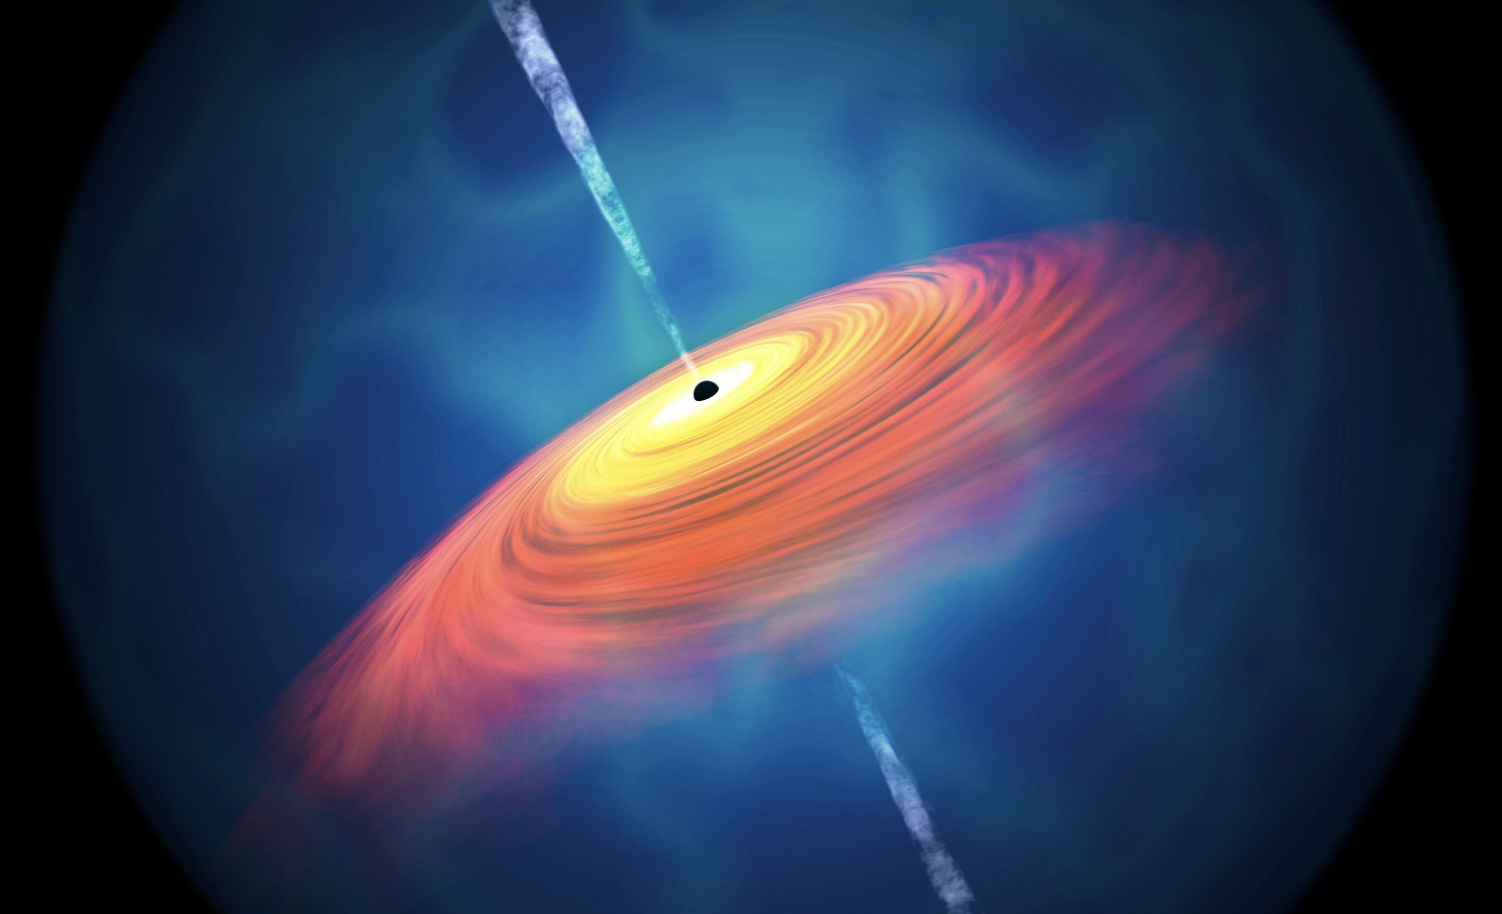 Illustration of a supermassive black hole